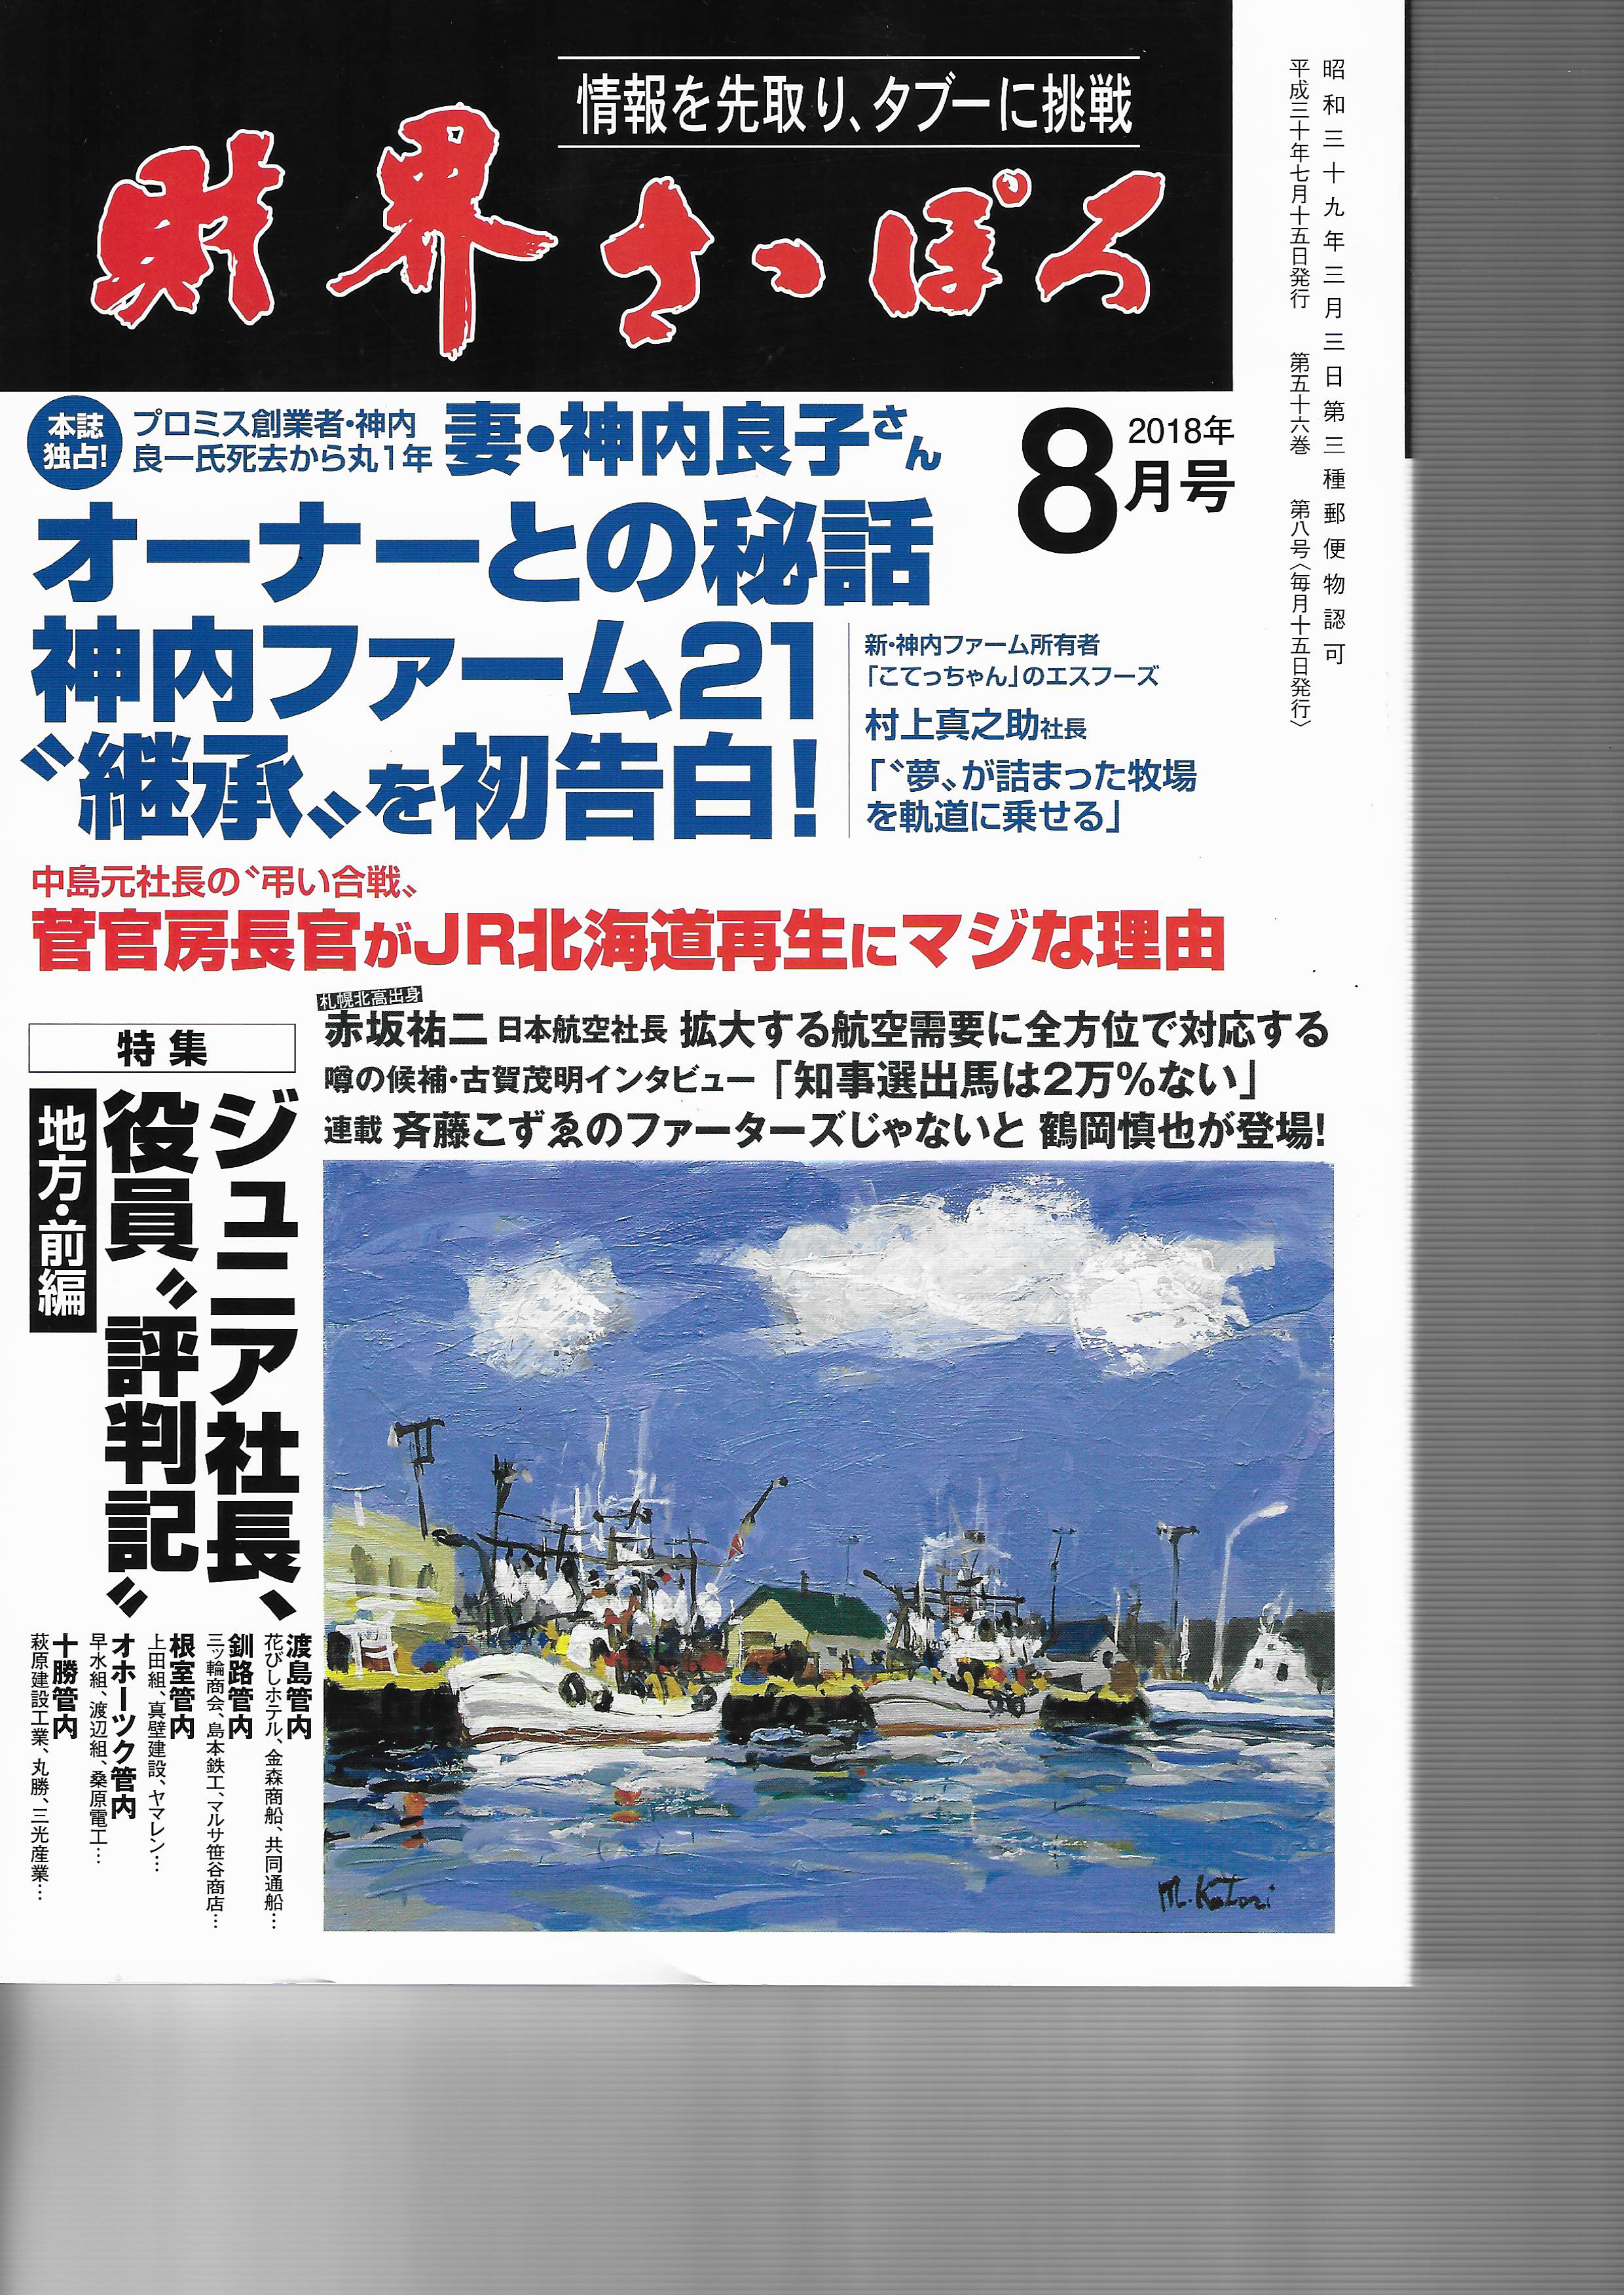 【取材】北海道の経済情報誌「財界さっぽろ」に代表武藤の取材記事が掲載されました。のサムネイル